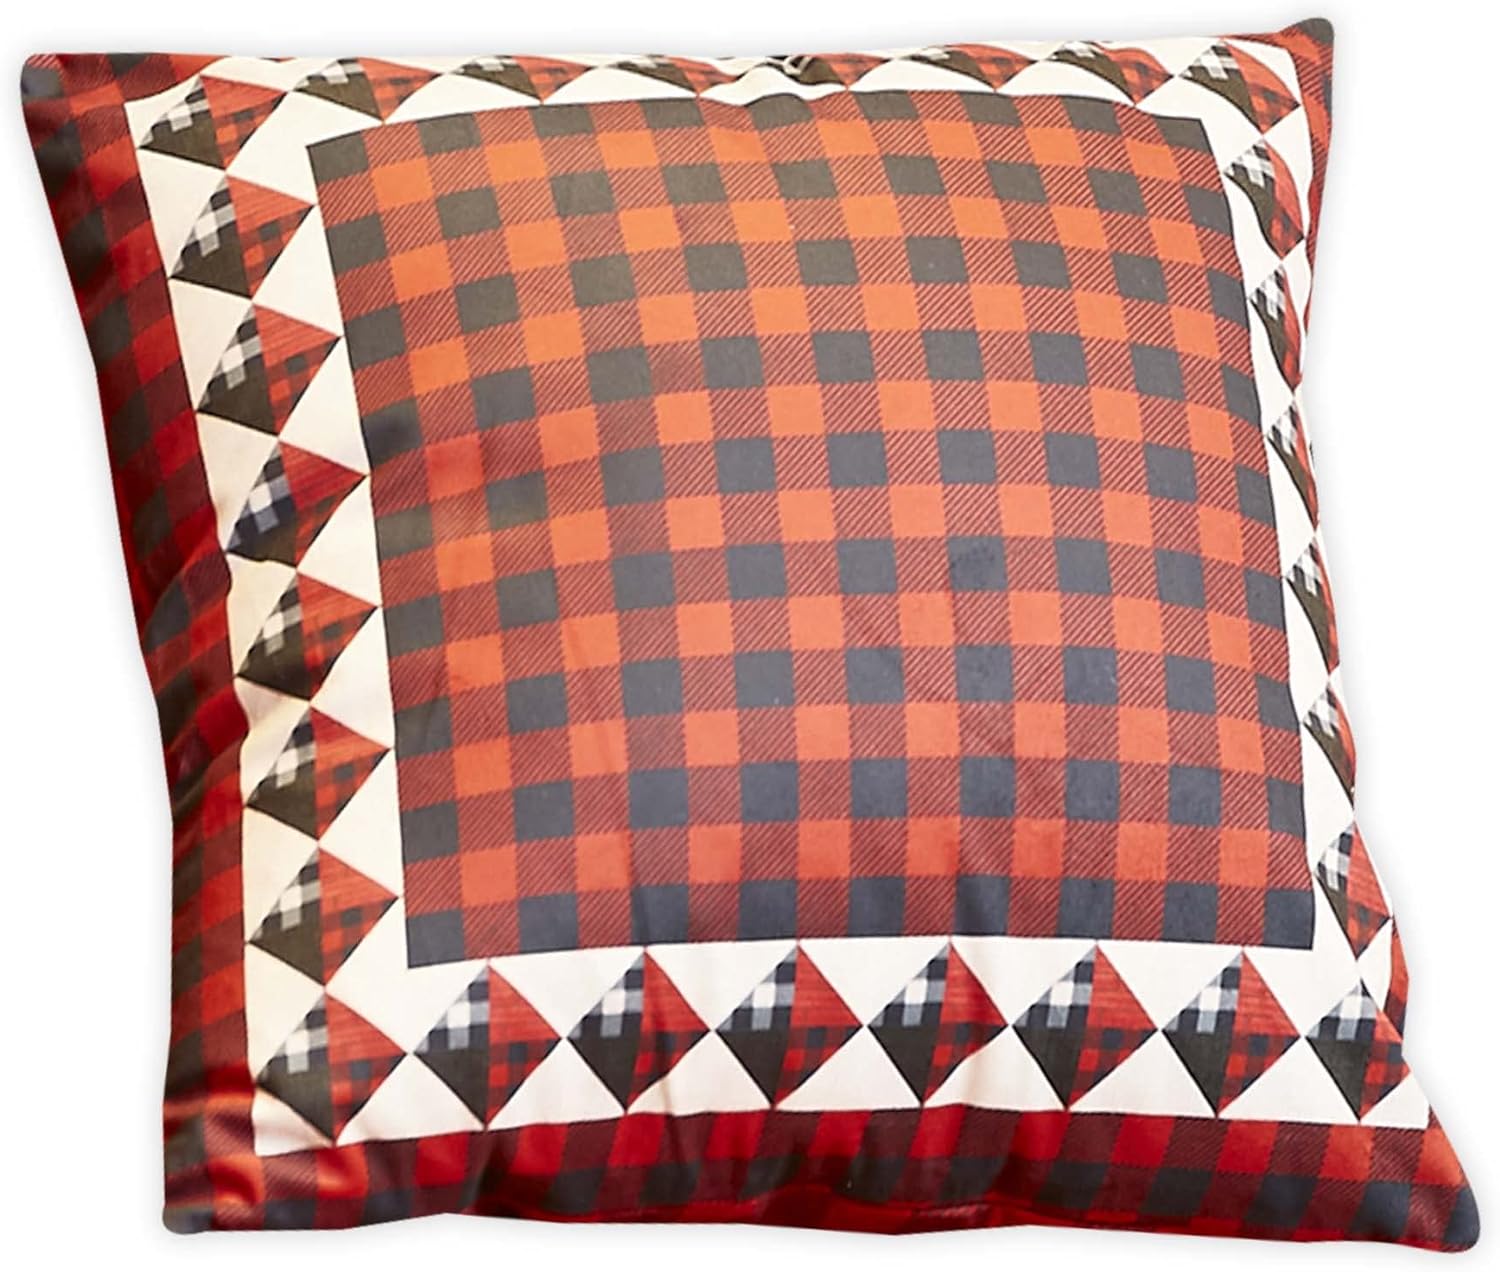 Virah Bella Throw Pillow Buffalo Check - 18" x 18" Decorative Accent Pillow - Cabin & Farmhouse Couch Décor